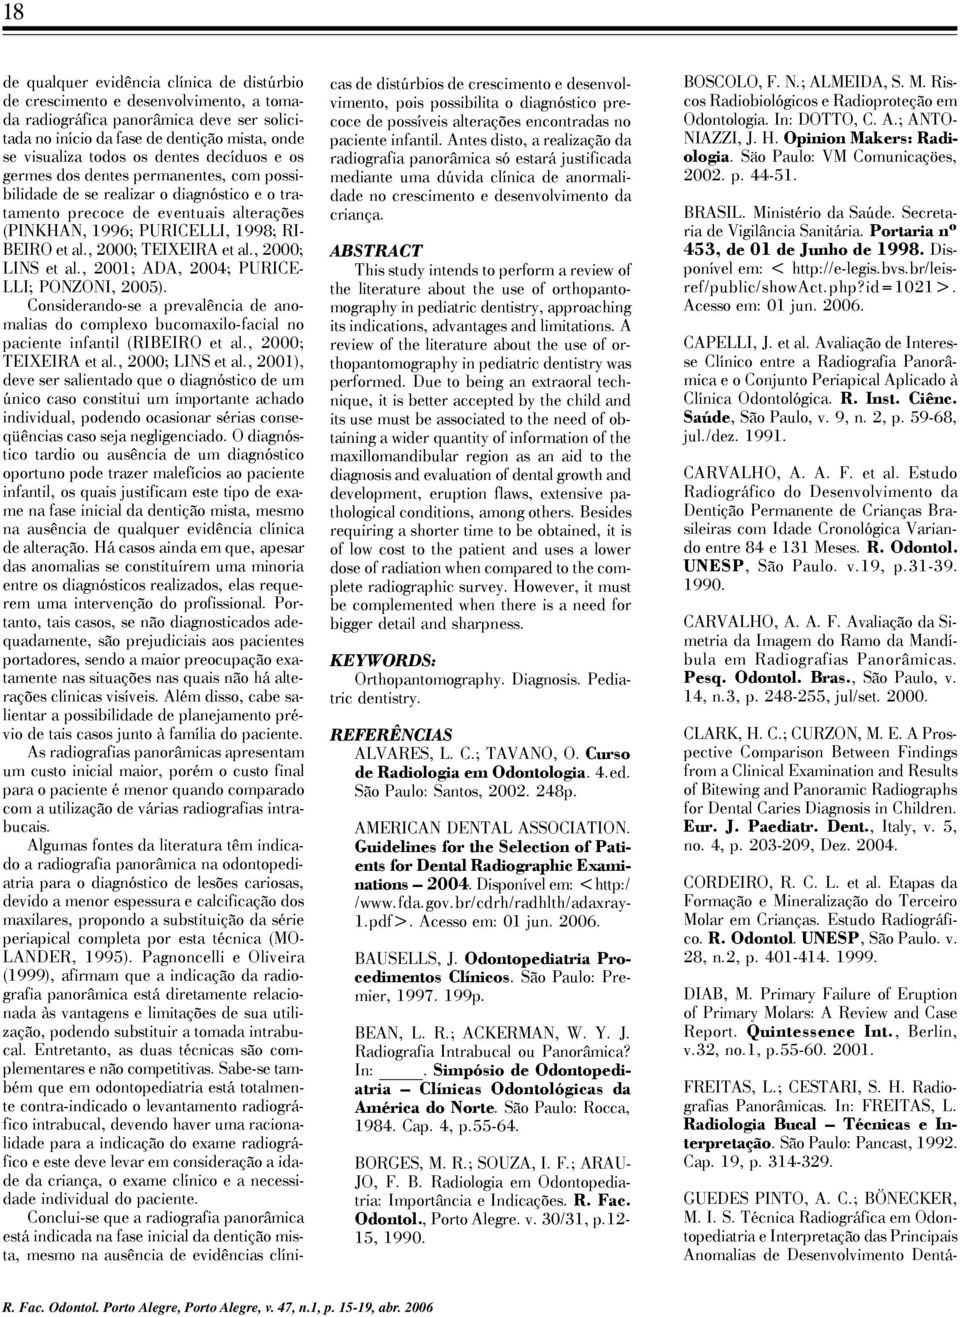 , 2000; TEIXEIRA et al., 2000; LINS et al., 2001; ADA, 2004; PURICE- LLI; PONZONI, 2005). Considerando-se a prevalência de anomalias do complexo bucomaxilo-facial no paciente infantil (RIBEIRO et al.